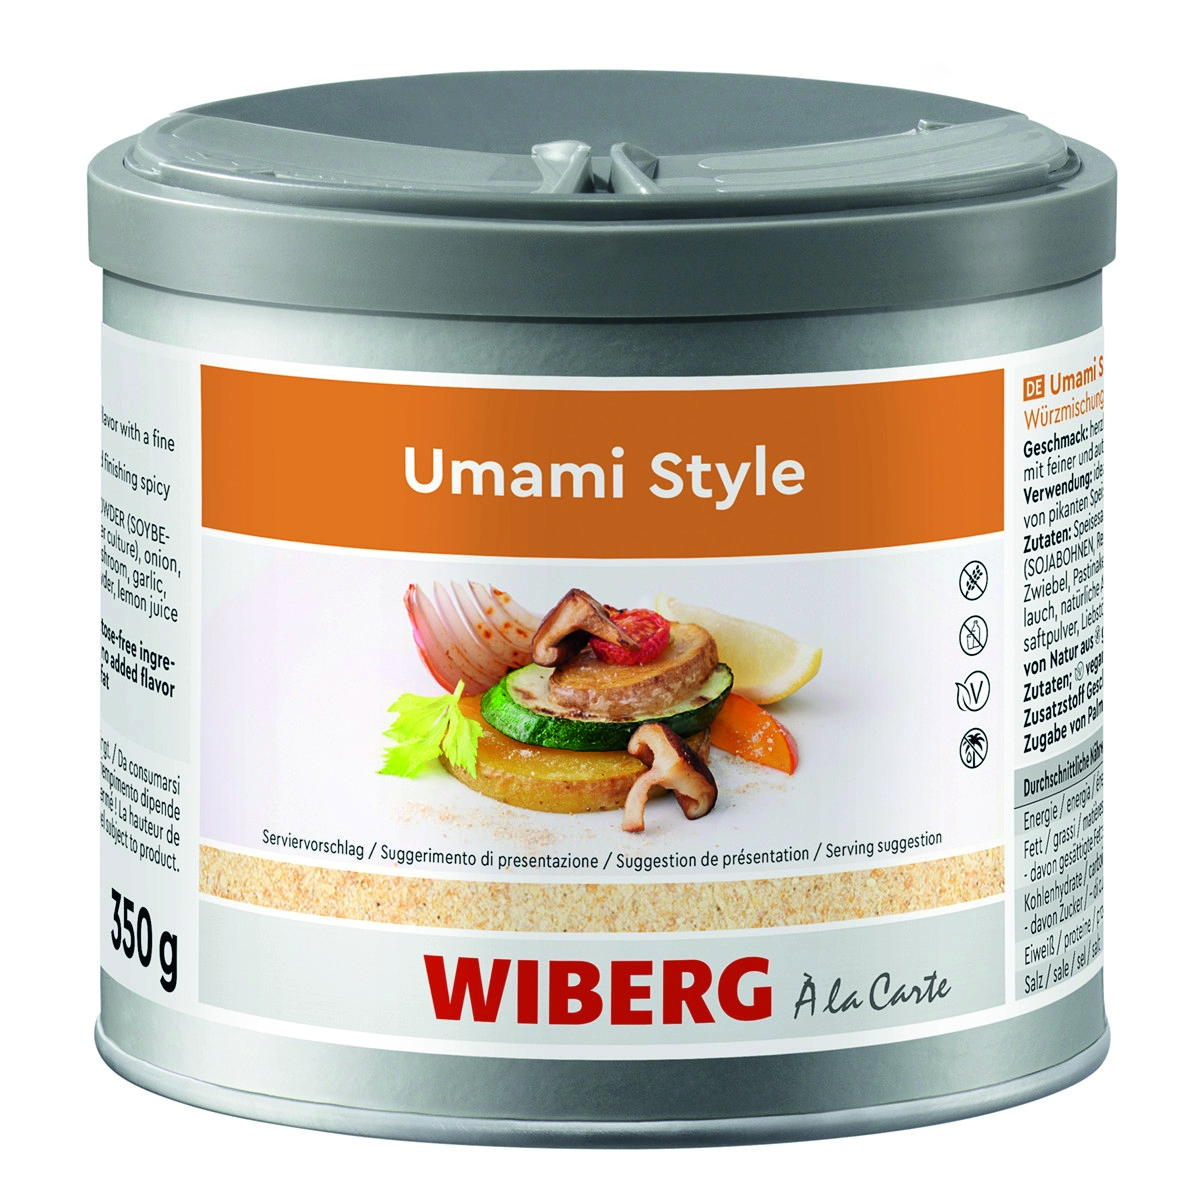 WIBERG Umami Style